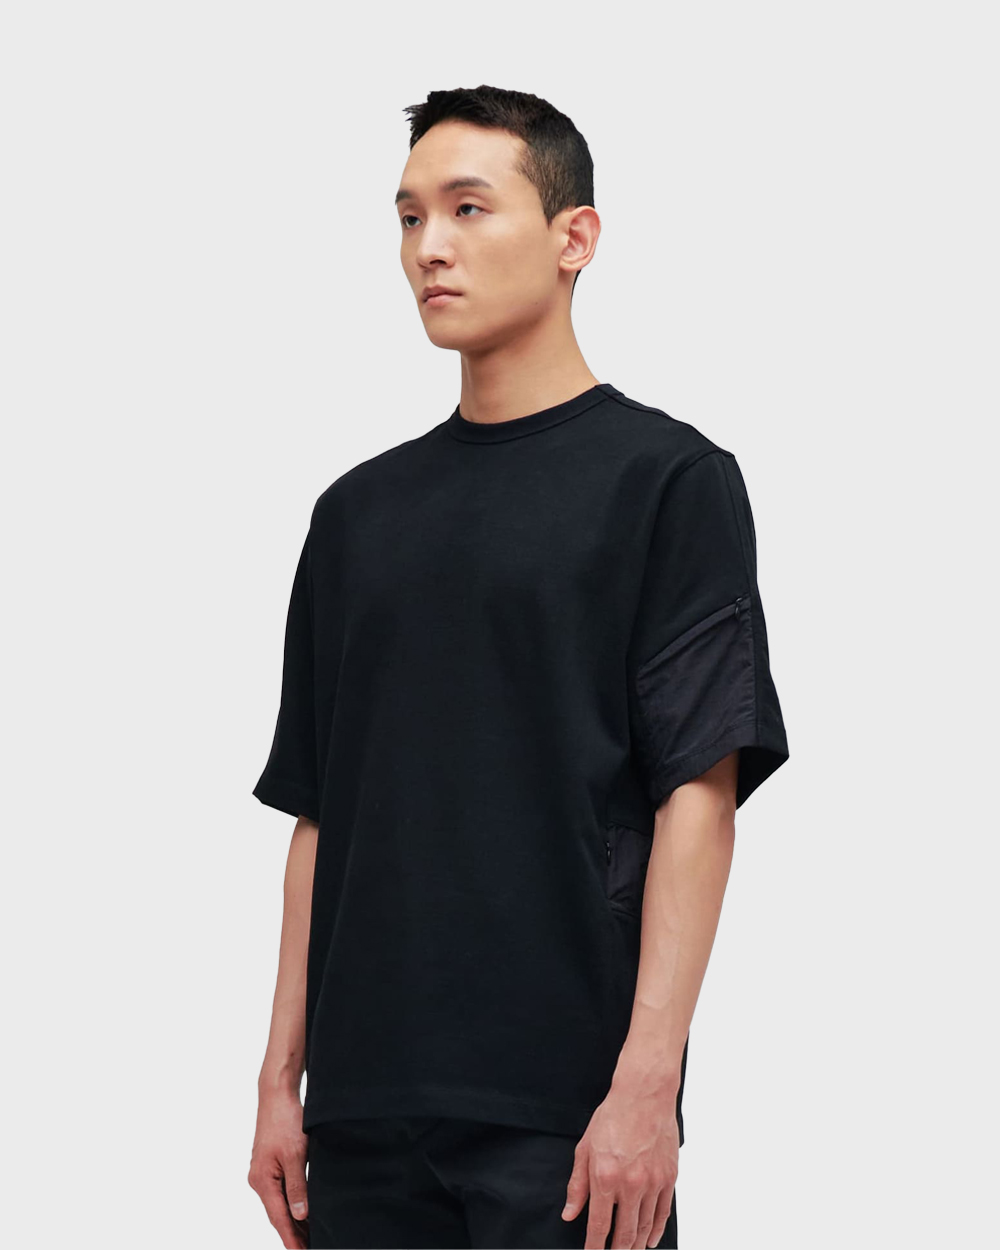 ÉÉ (Étiquette-vidÉ) Pocket t-shirts (Black)